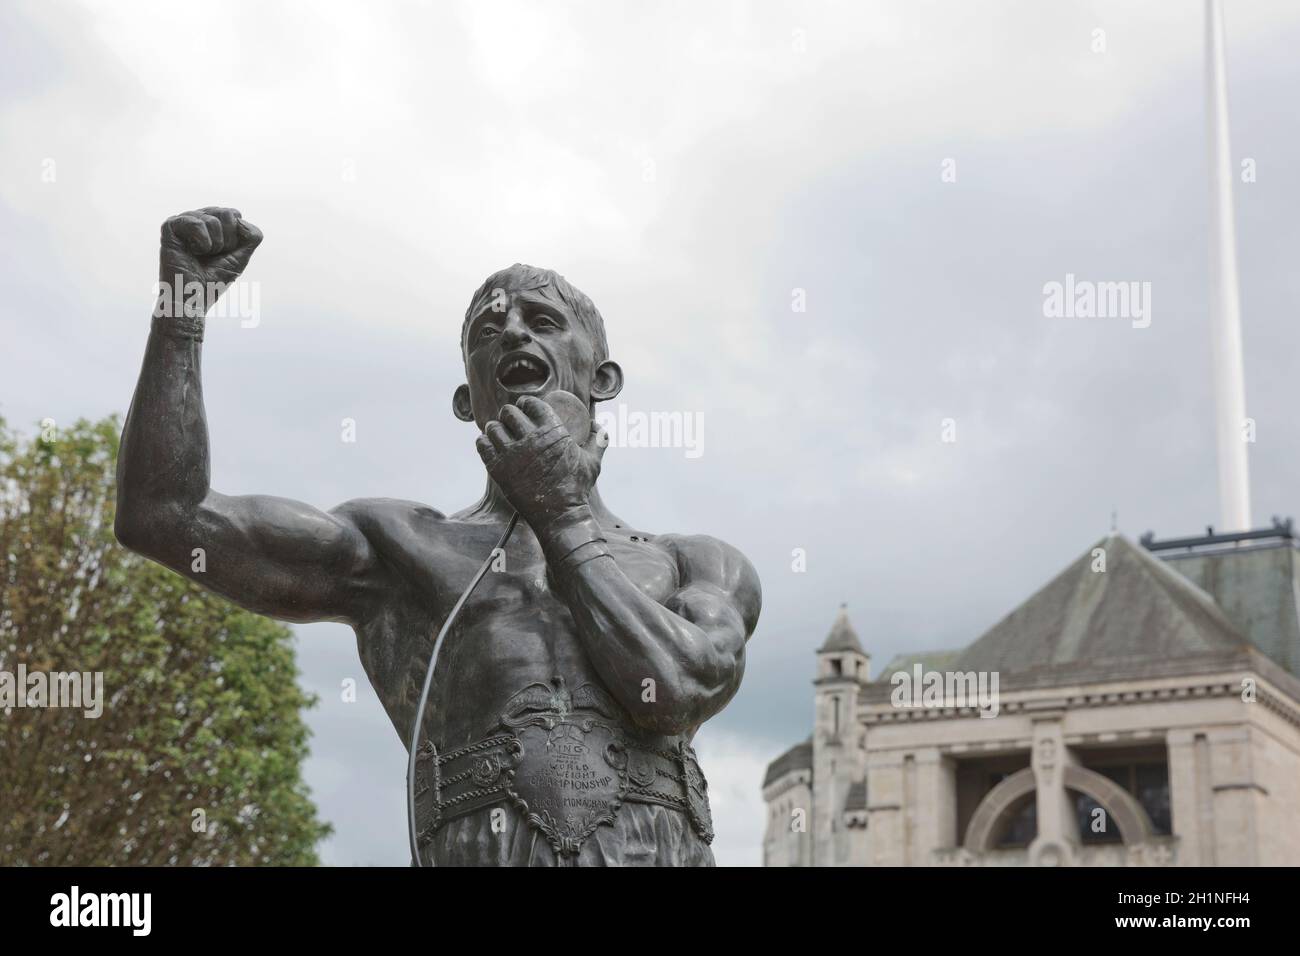 Belfast, Irlande - 9 juin 2017 : statue de la légende de la boxe John 'Rinty' Monaghan dans les jardins de la cathédrale de Belfast, Irlande du Nord. Banque D'Images